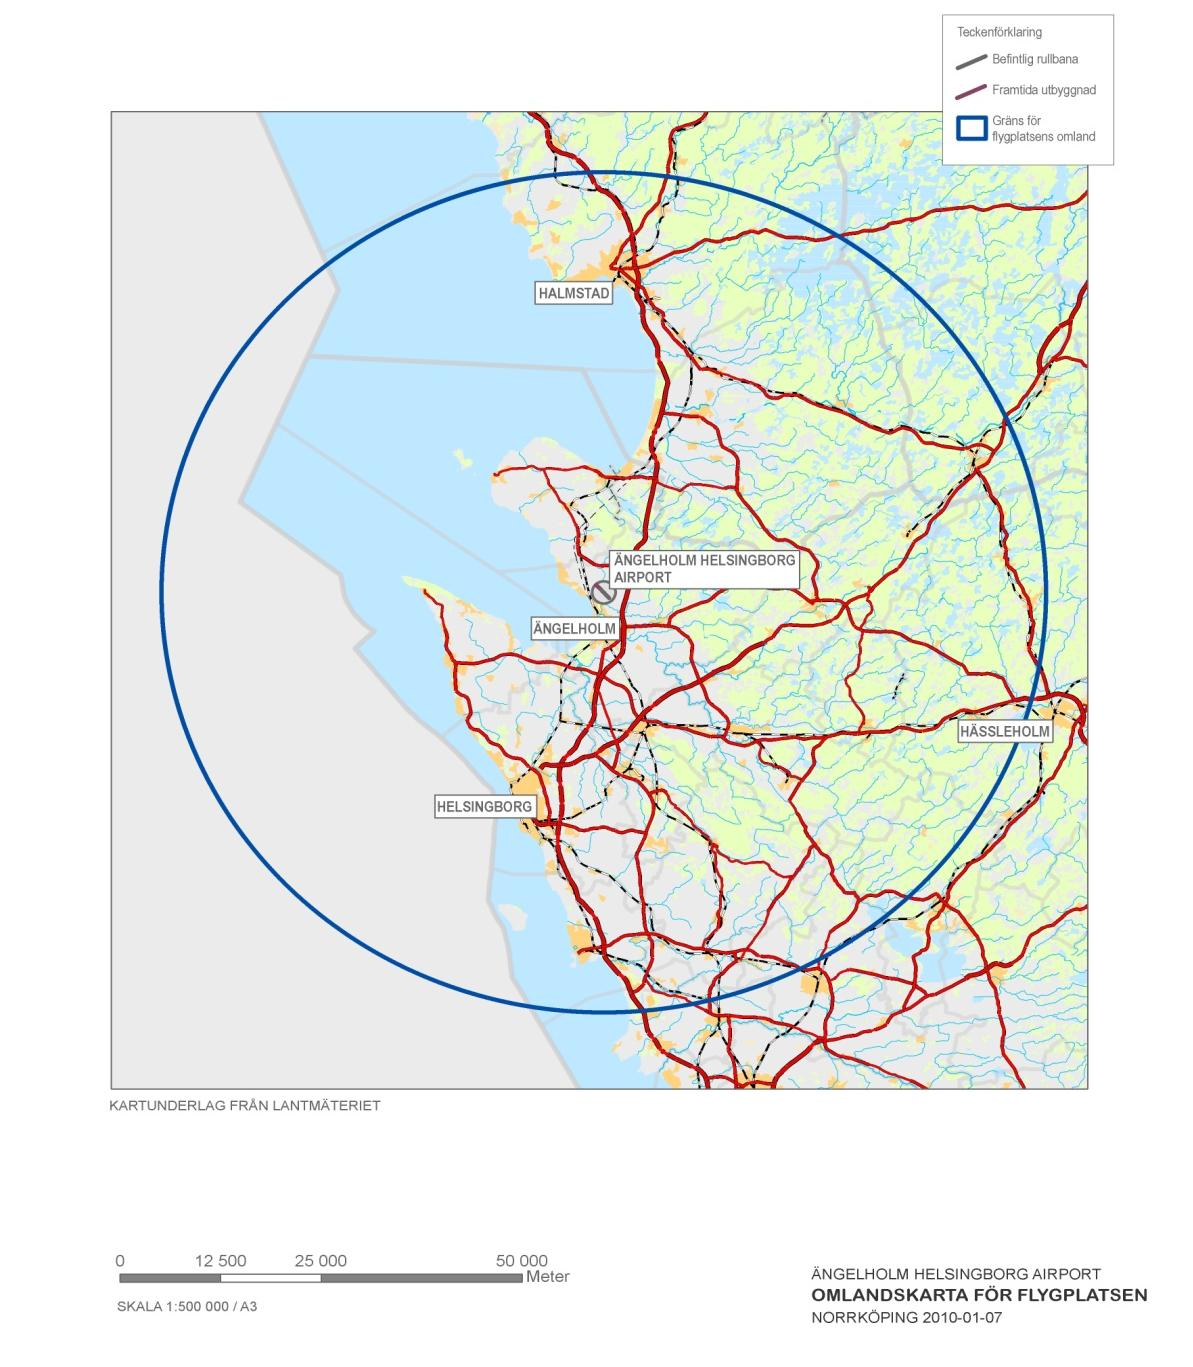 Kartan visar en cirkel med radien 55 km från Ängelholms flygplats 5.